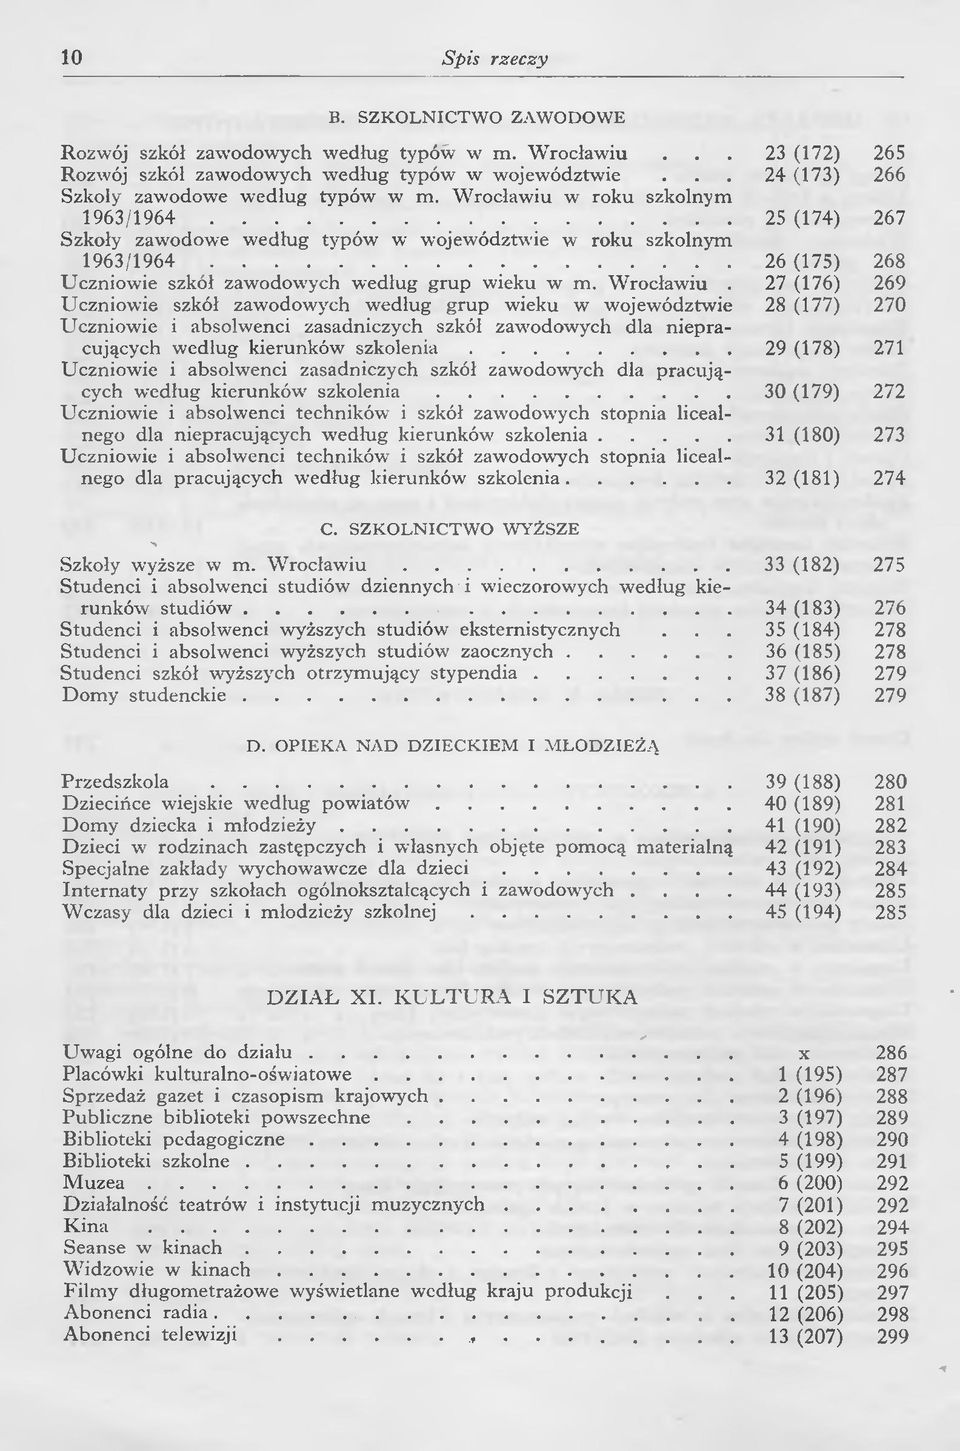 Wrocławiu w roku szkolnym 1963/1964 25 (174) 267 Szkoły zawodowe według typów w województwie w roku szkolnym 1963/1964 26 (175) 268 Uczniowie szkół zawodowych według grup wieku w m. Wrocławiu.